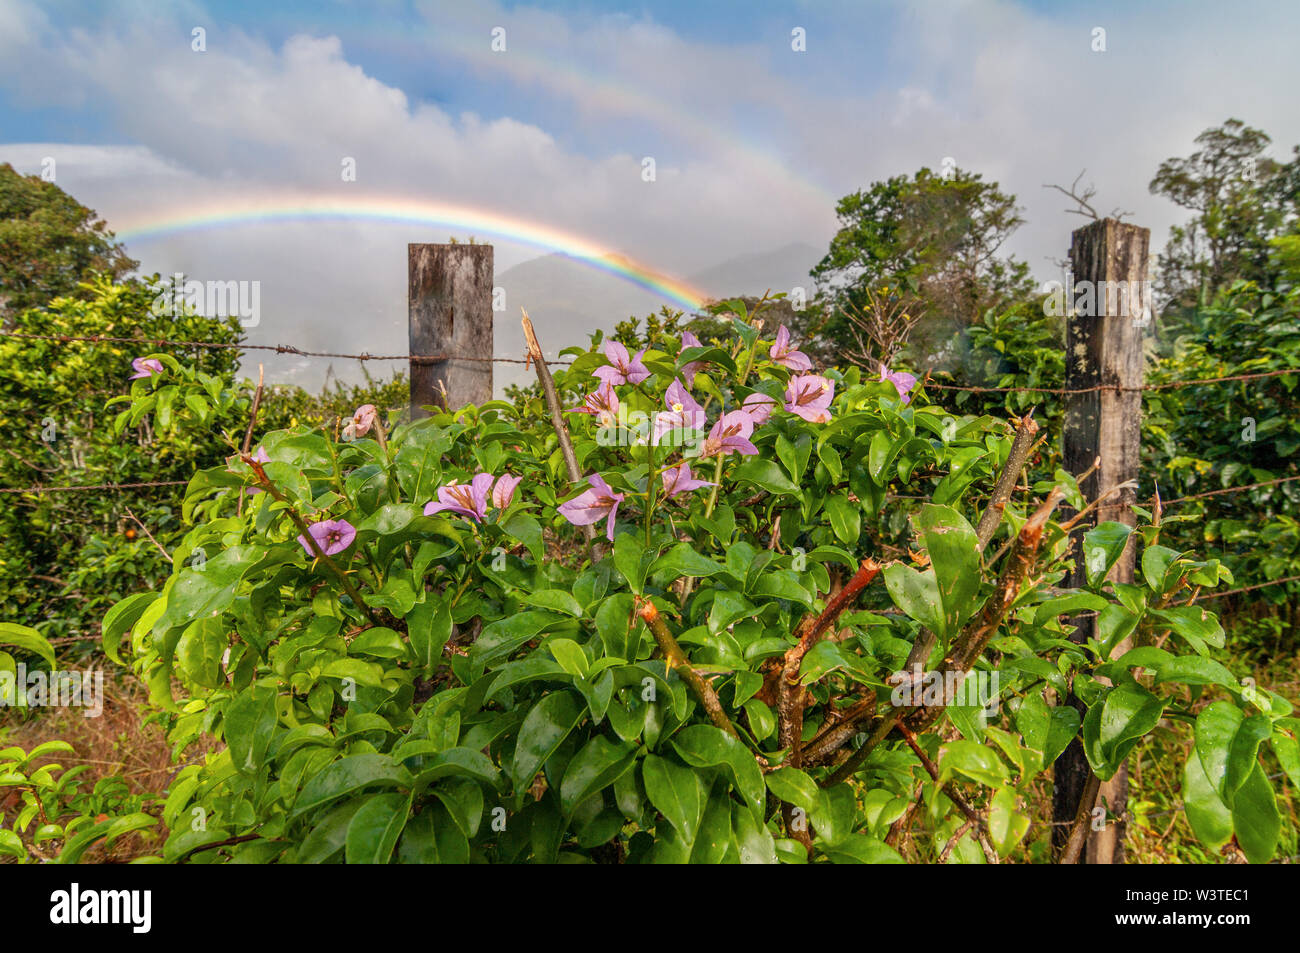 Immagine di fiori lungo un recinto in mezzo alla vegetazione lussureggiante di Boquete, una città nelle highlands Occidentali del Panama. Foto Stock